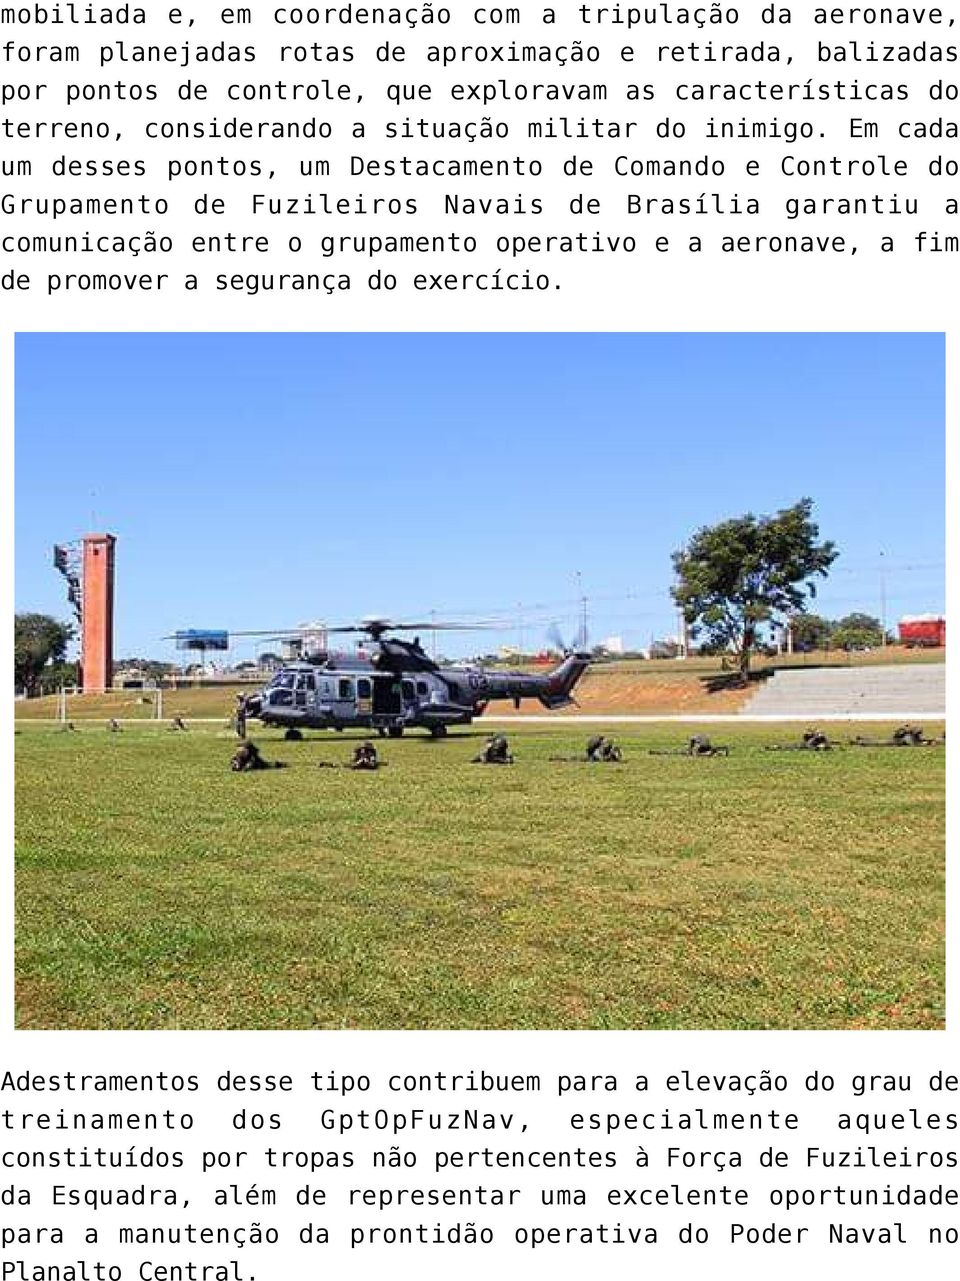 Em cada um desses pontos, um Destacamento de Comando e Controle do Grupamento de Fuzileiros Navais de Brasília garantiu a comunicação entre o grupamento operativo e a aeronave, a fim de